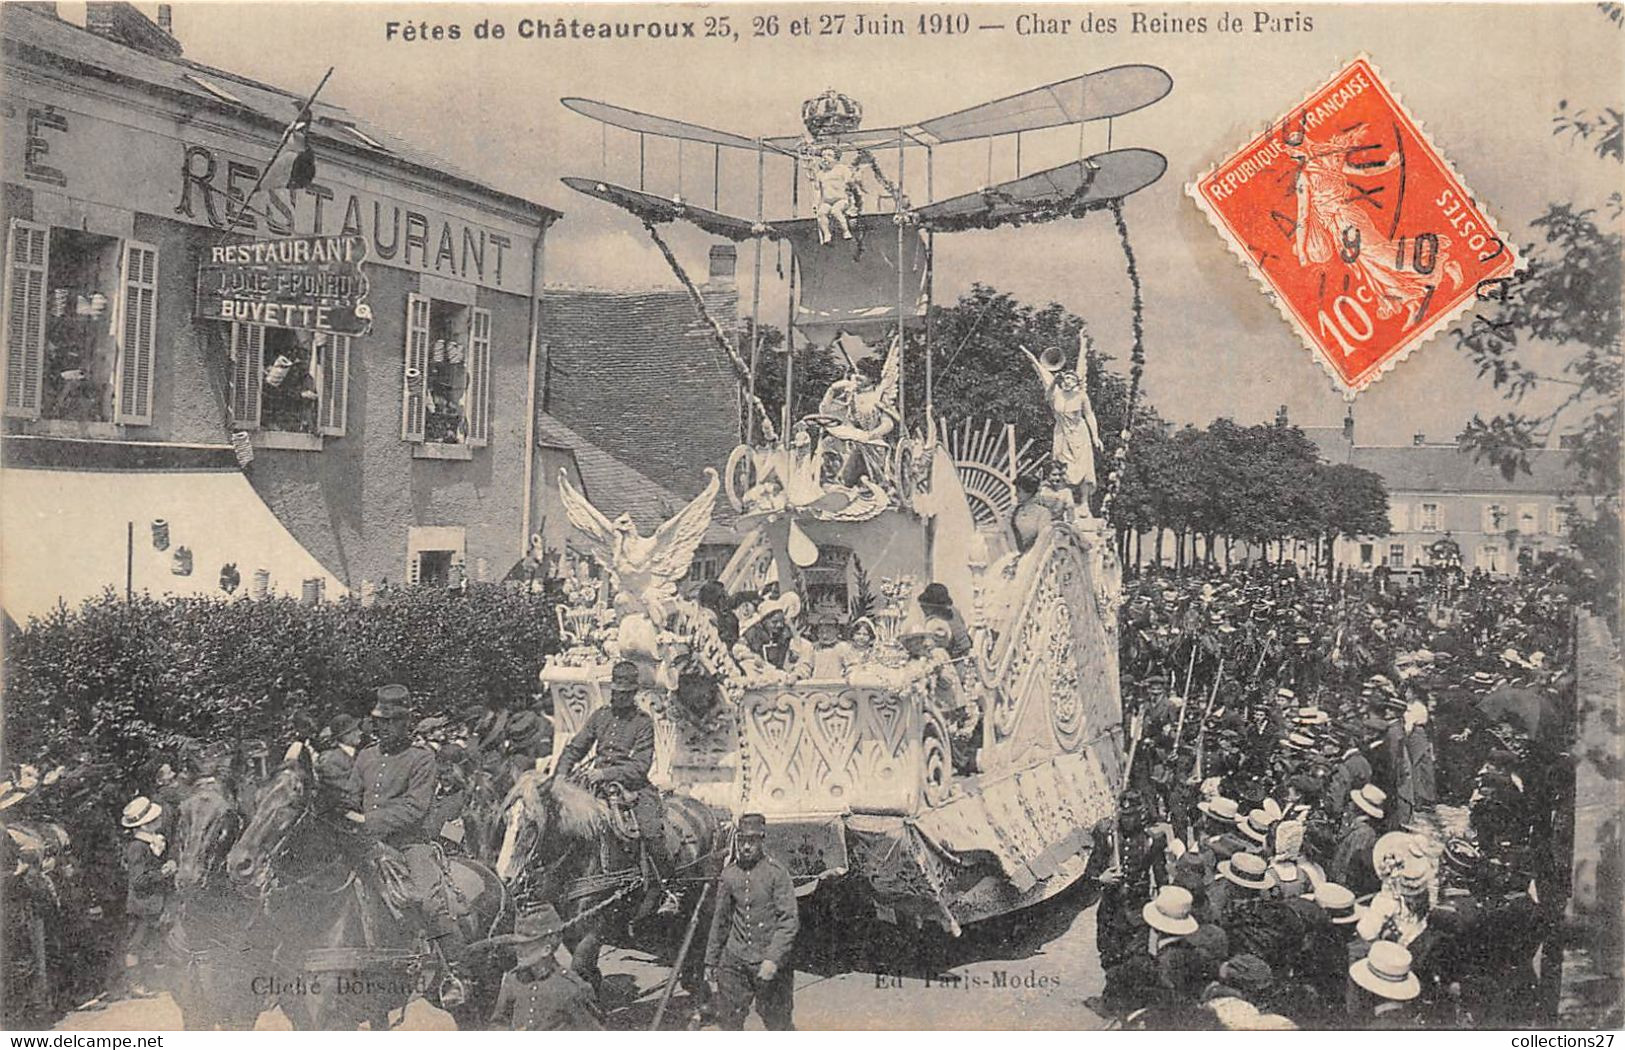 36-CHATEAUROUX-FÊTES DE CHATEAUROUX- 25/26 ET 27 JUIN 1910- CHAR DES REINES DE PARIS - Chateauroux